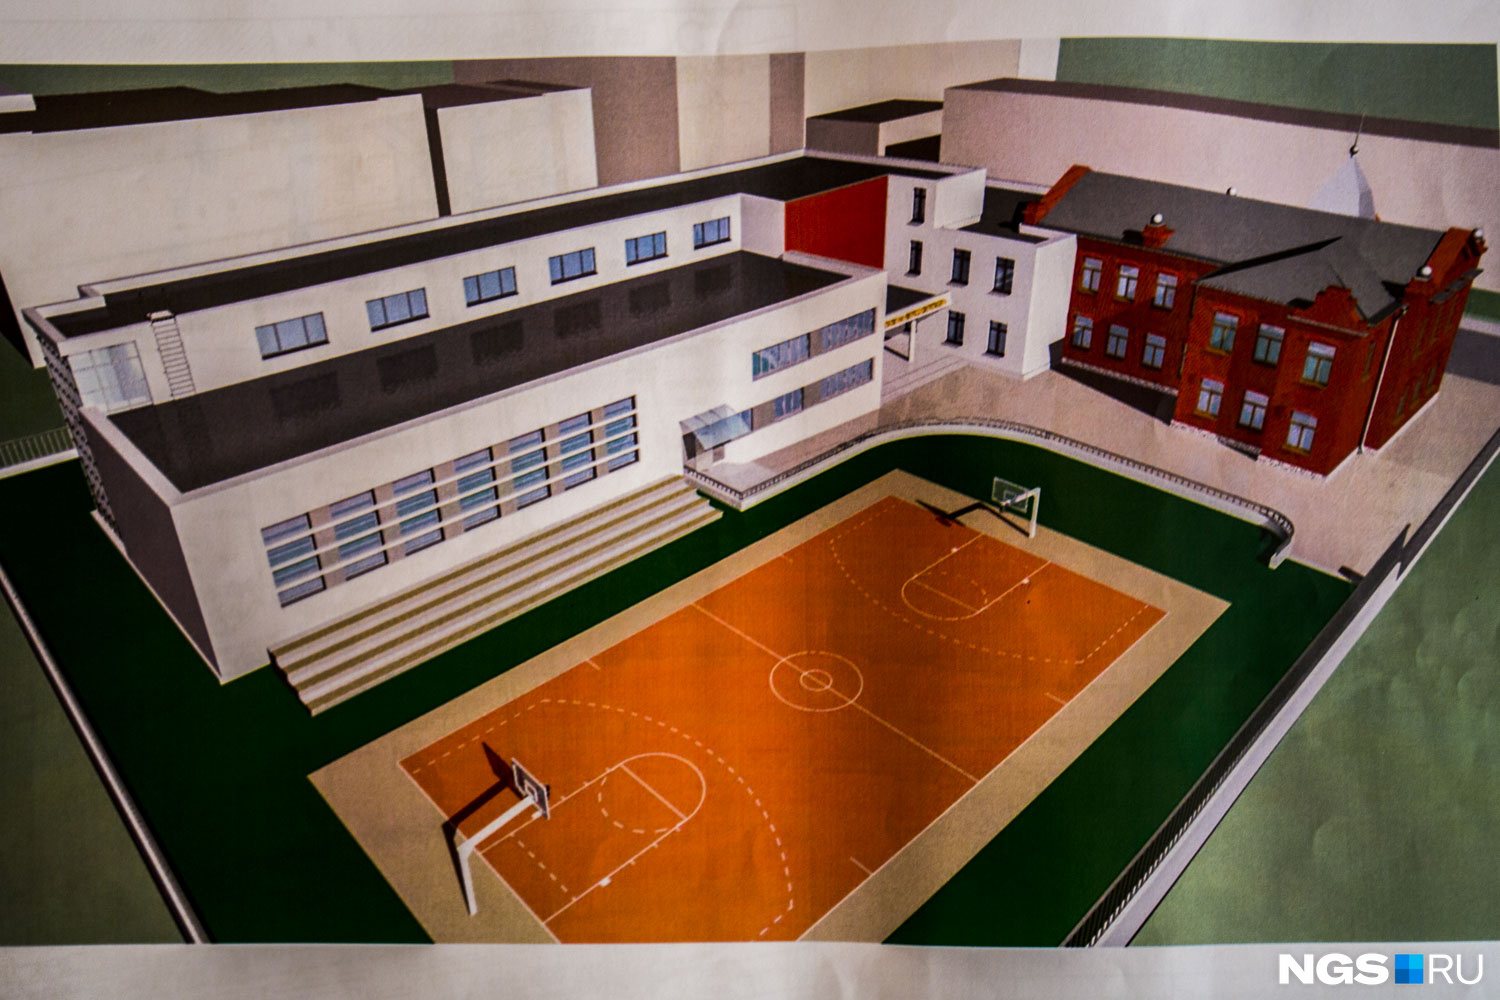 Проект пристройки к школе. Вид с угла улиц Чаплыгина и Революции